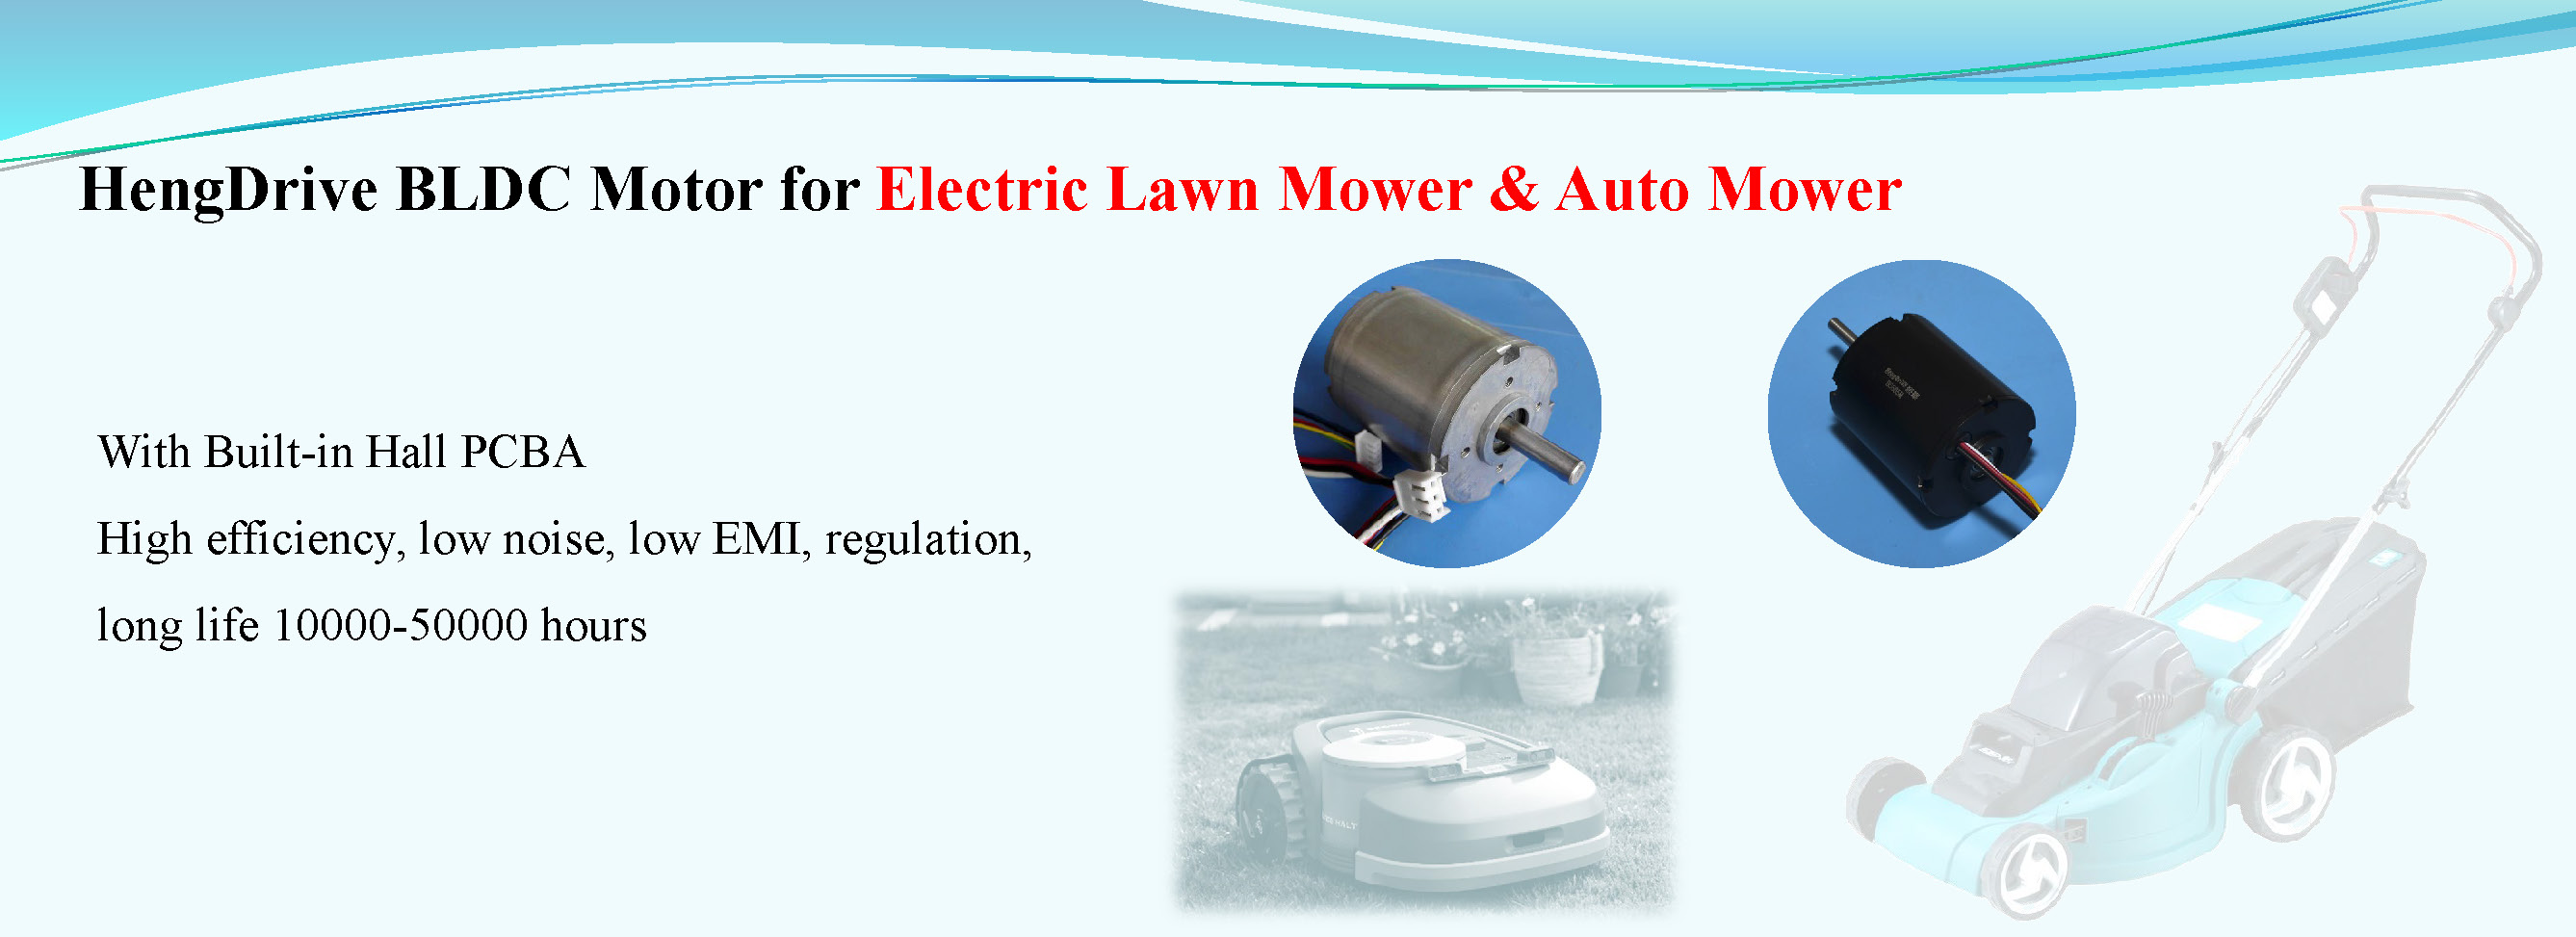 Electric Lawn Mower & Aut